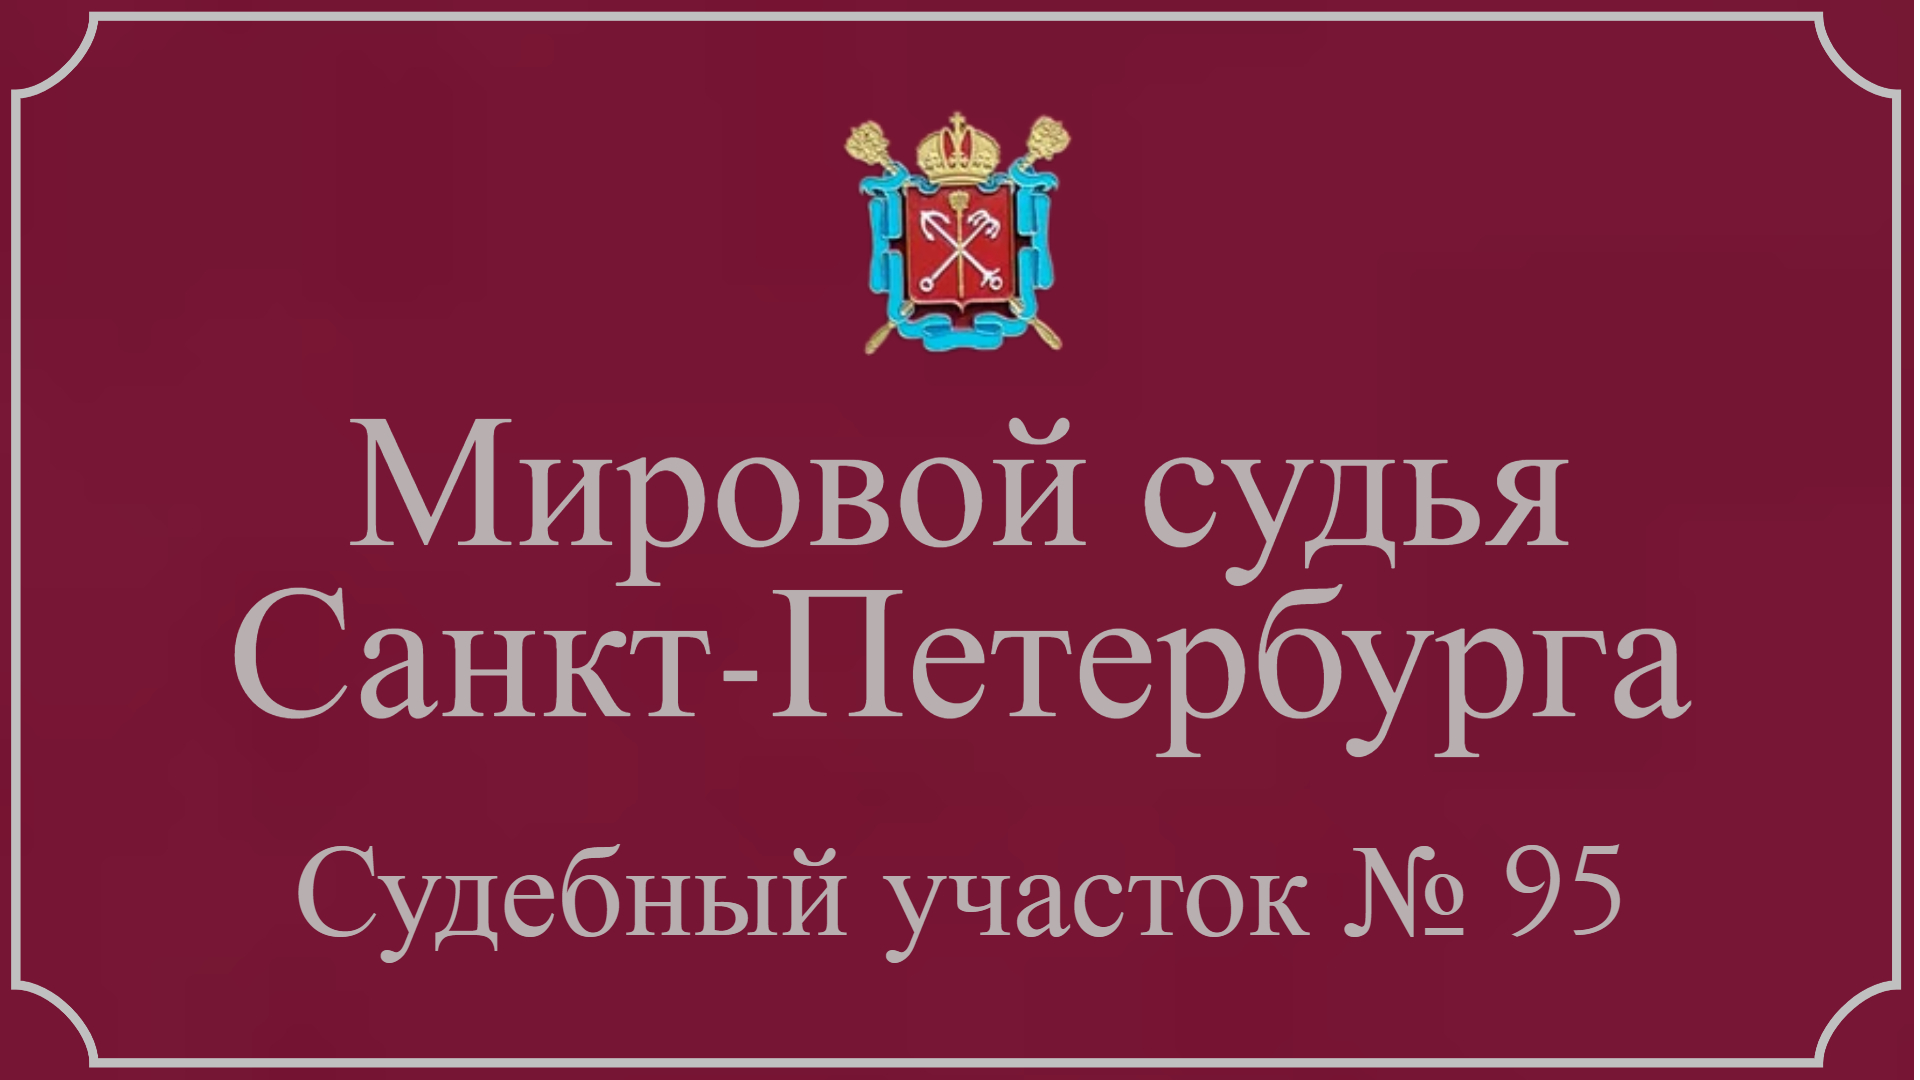 Информация по 95 судебному участку в Санкт-Петербурге.